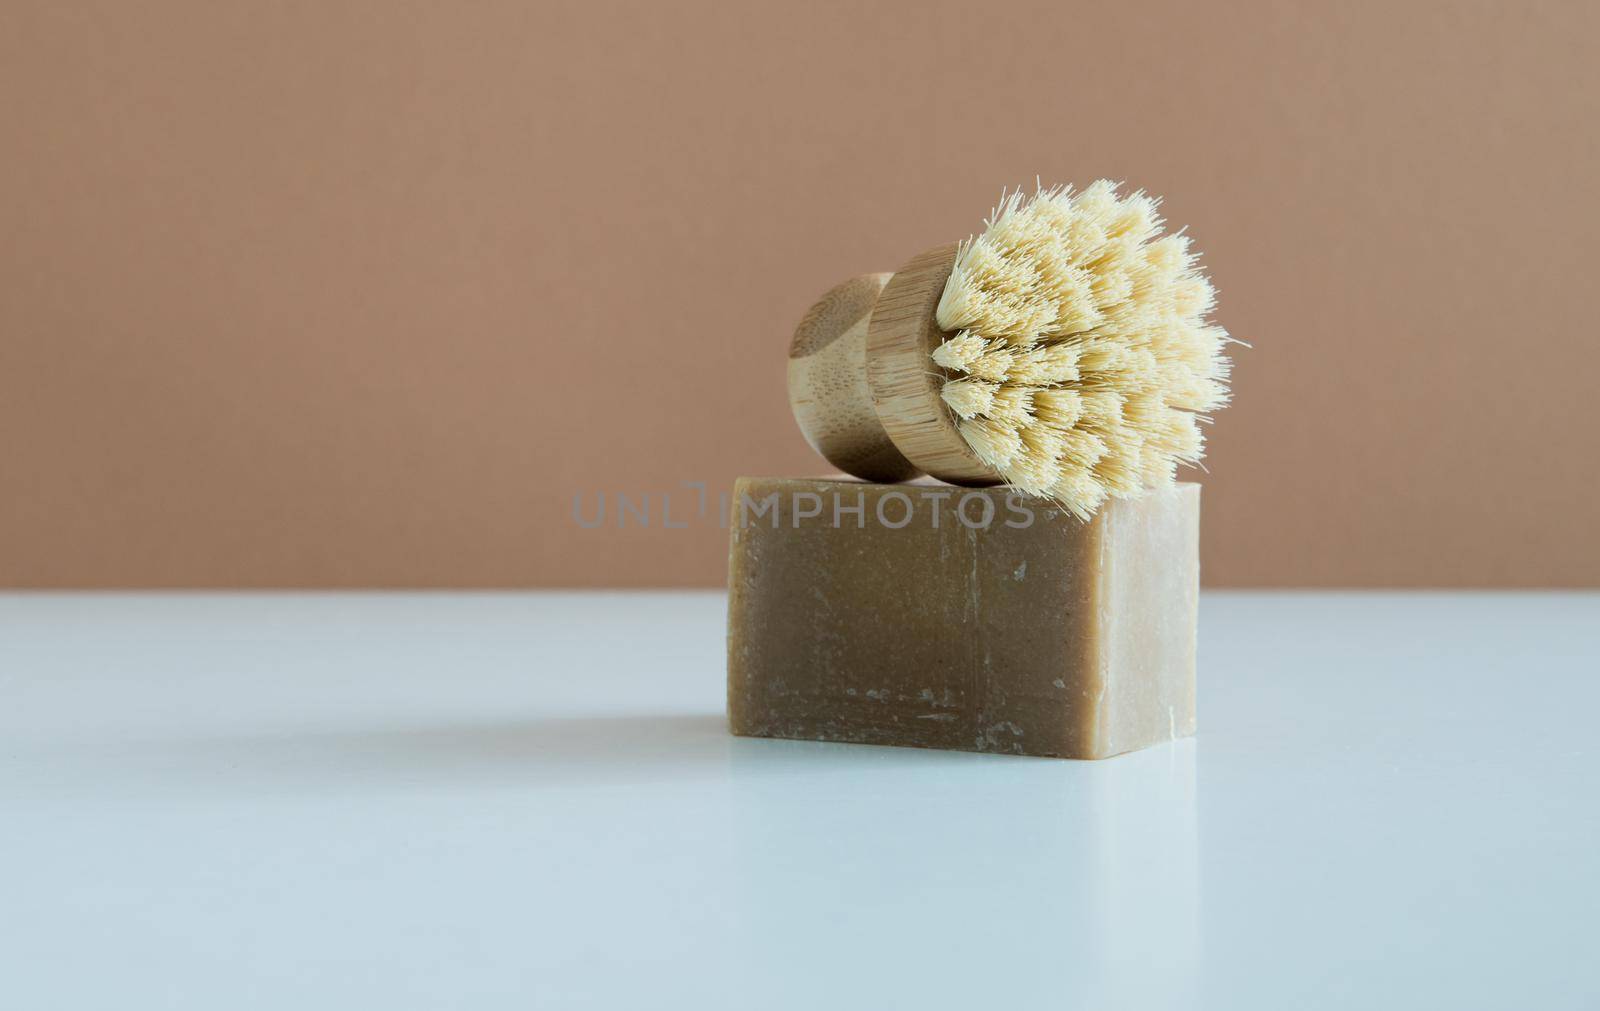 zero waste bamboo brush with soap for dishwashing . High quality photo